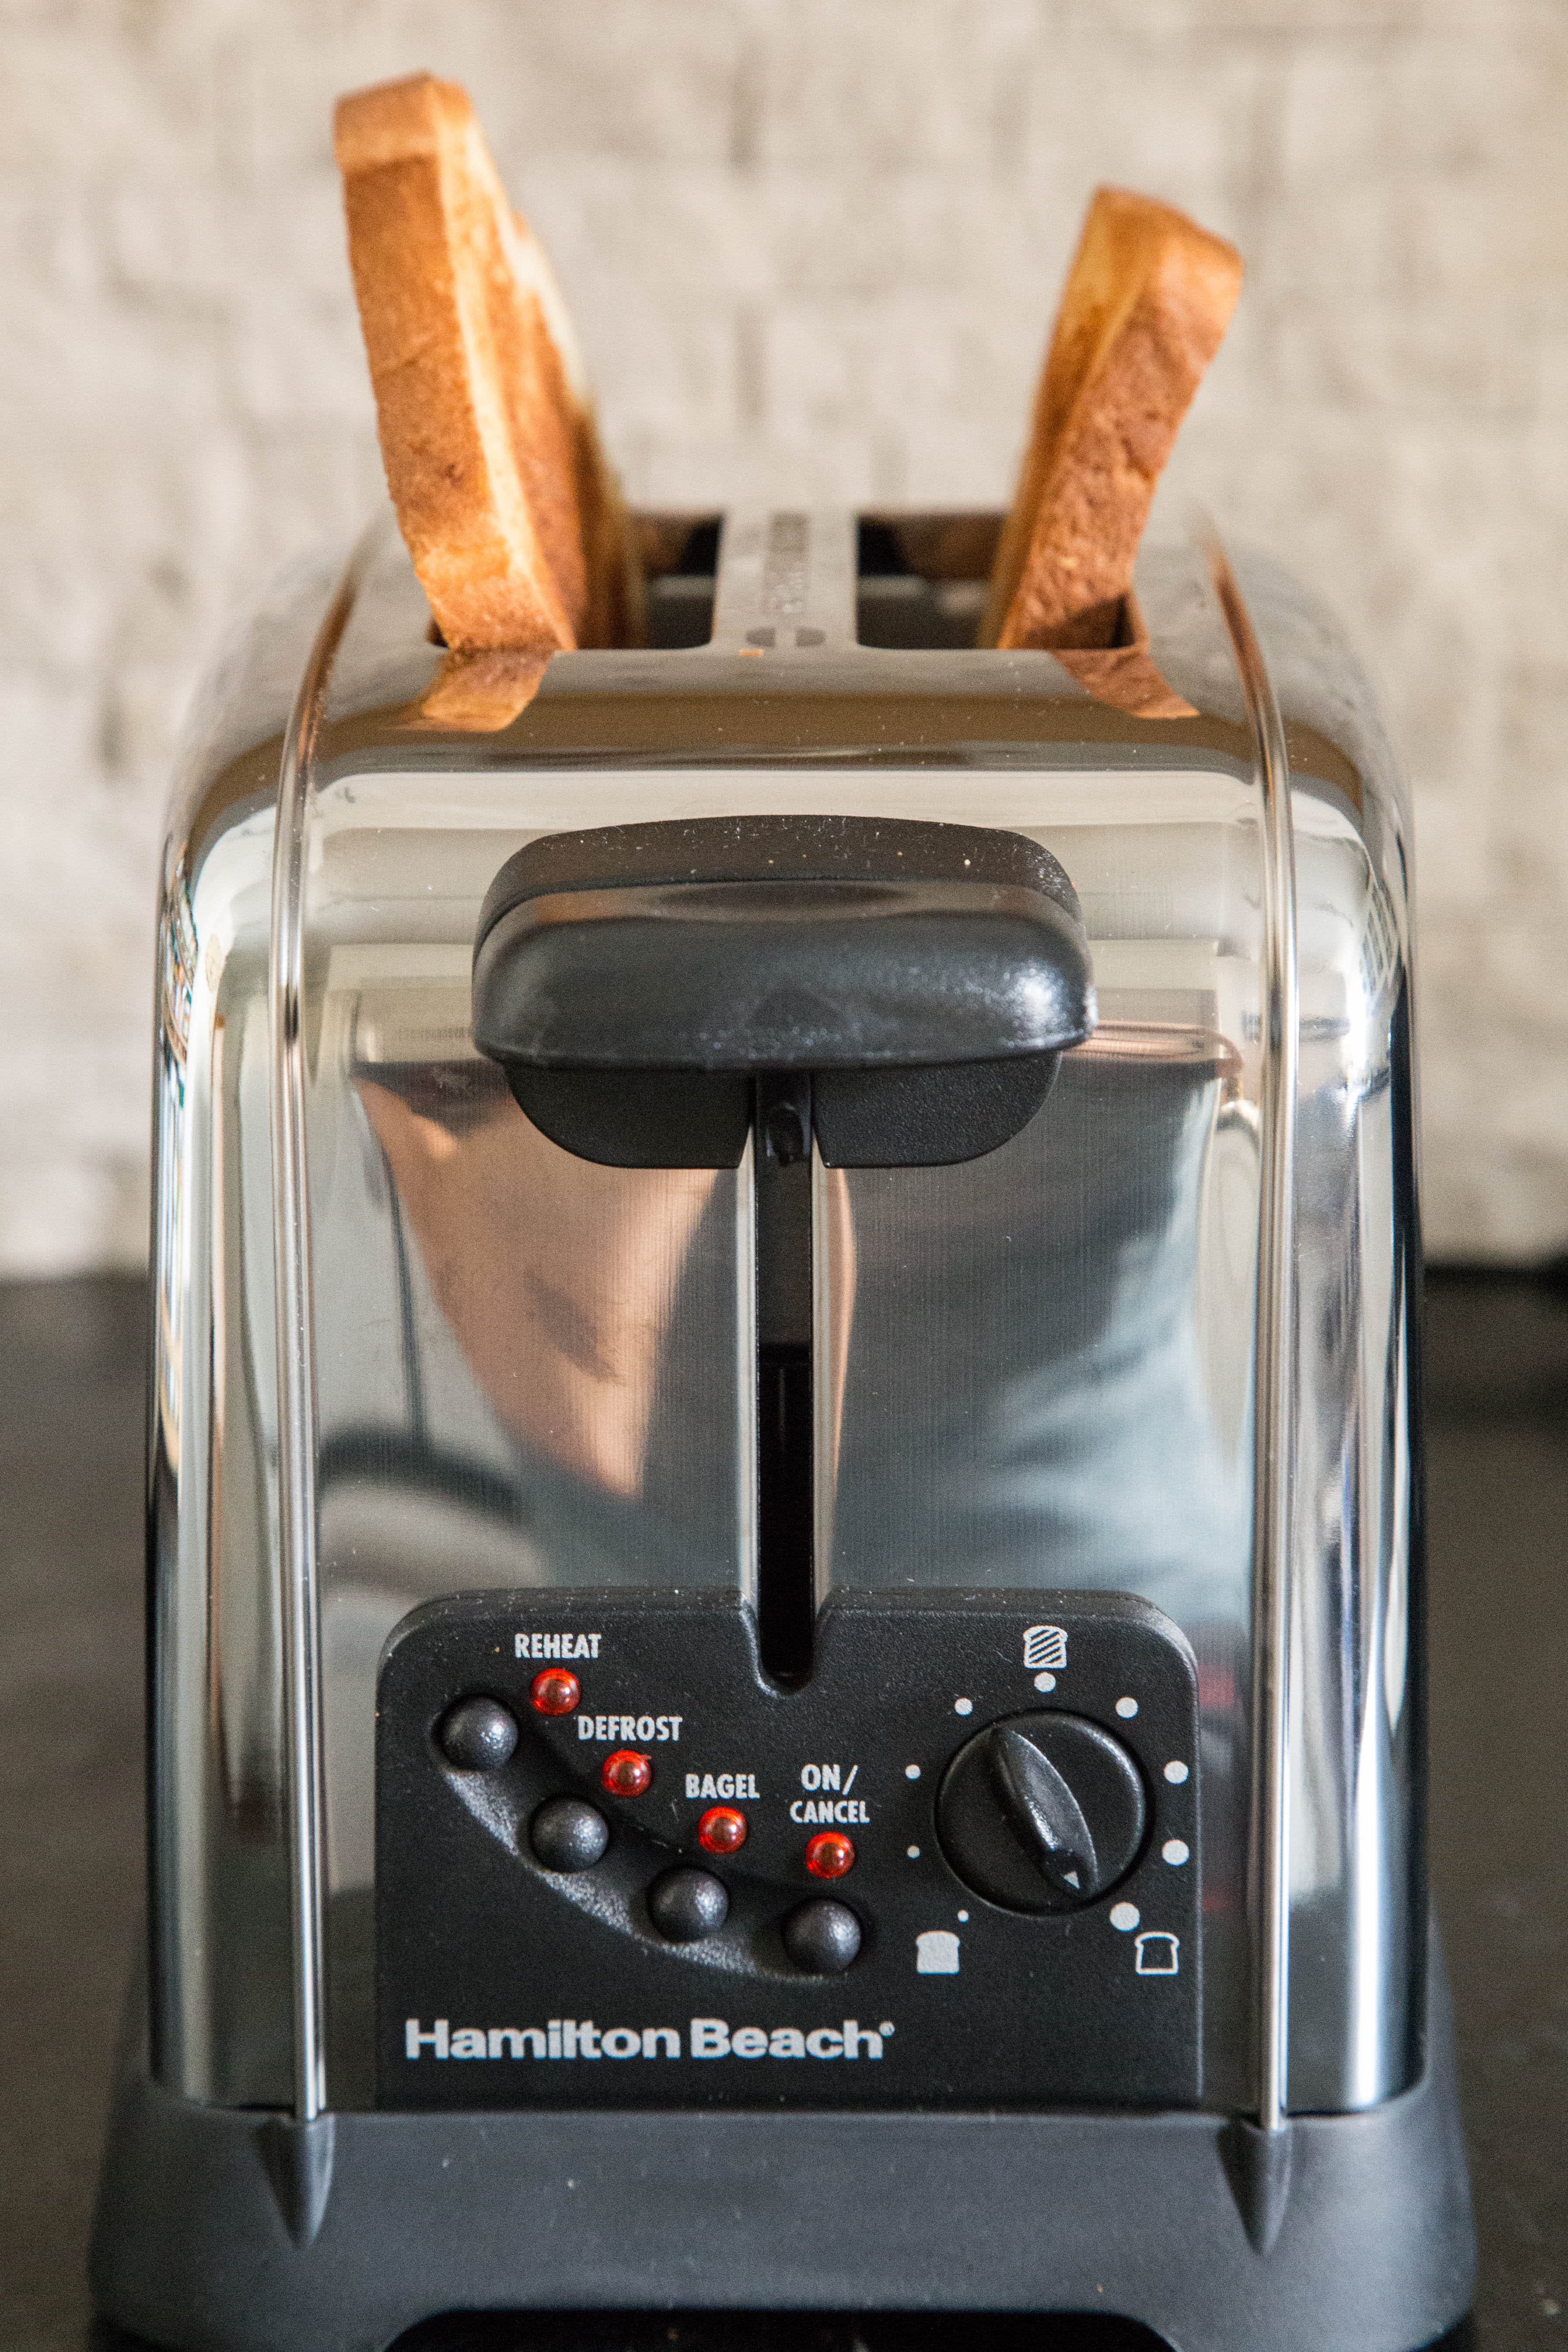 Hamilton Beach 2-Slice Toaster Review: Does the Job